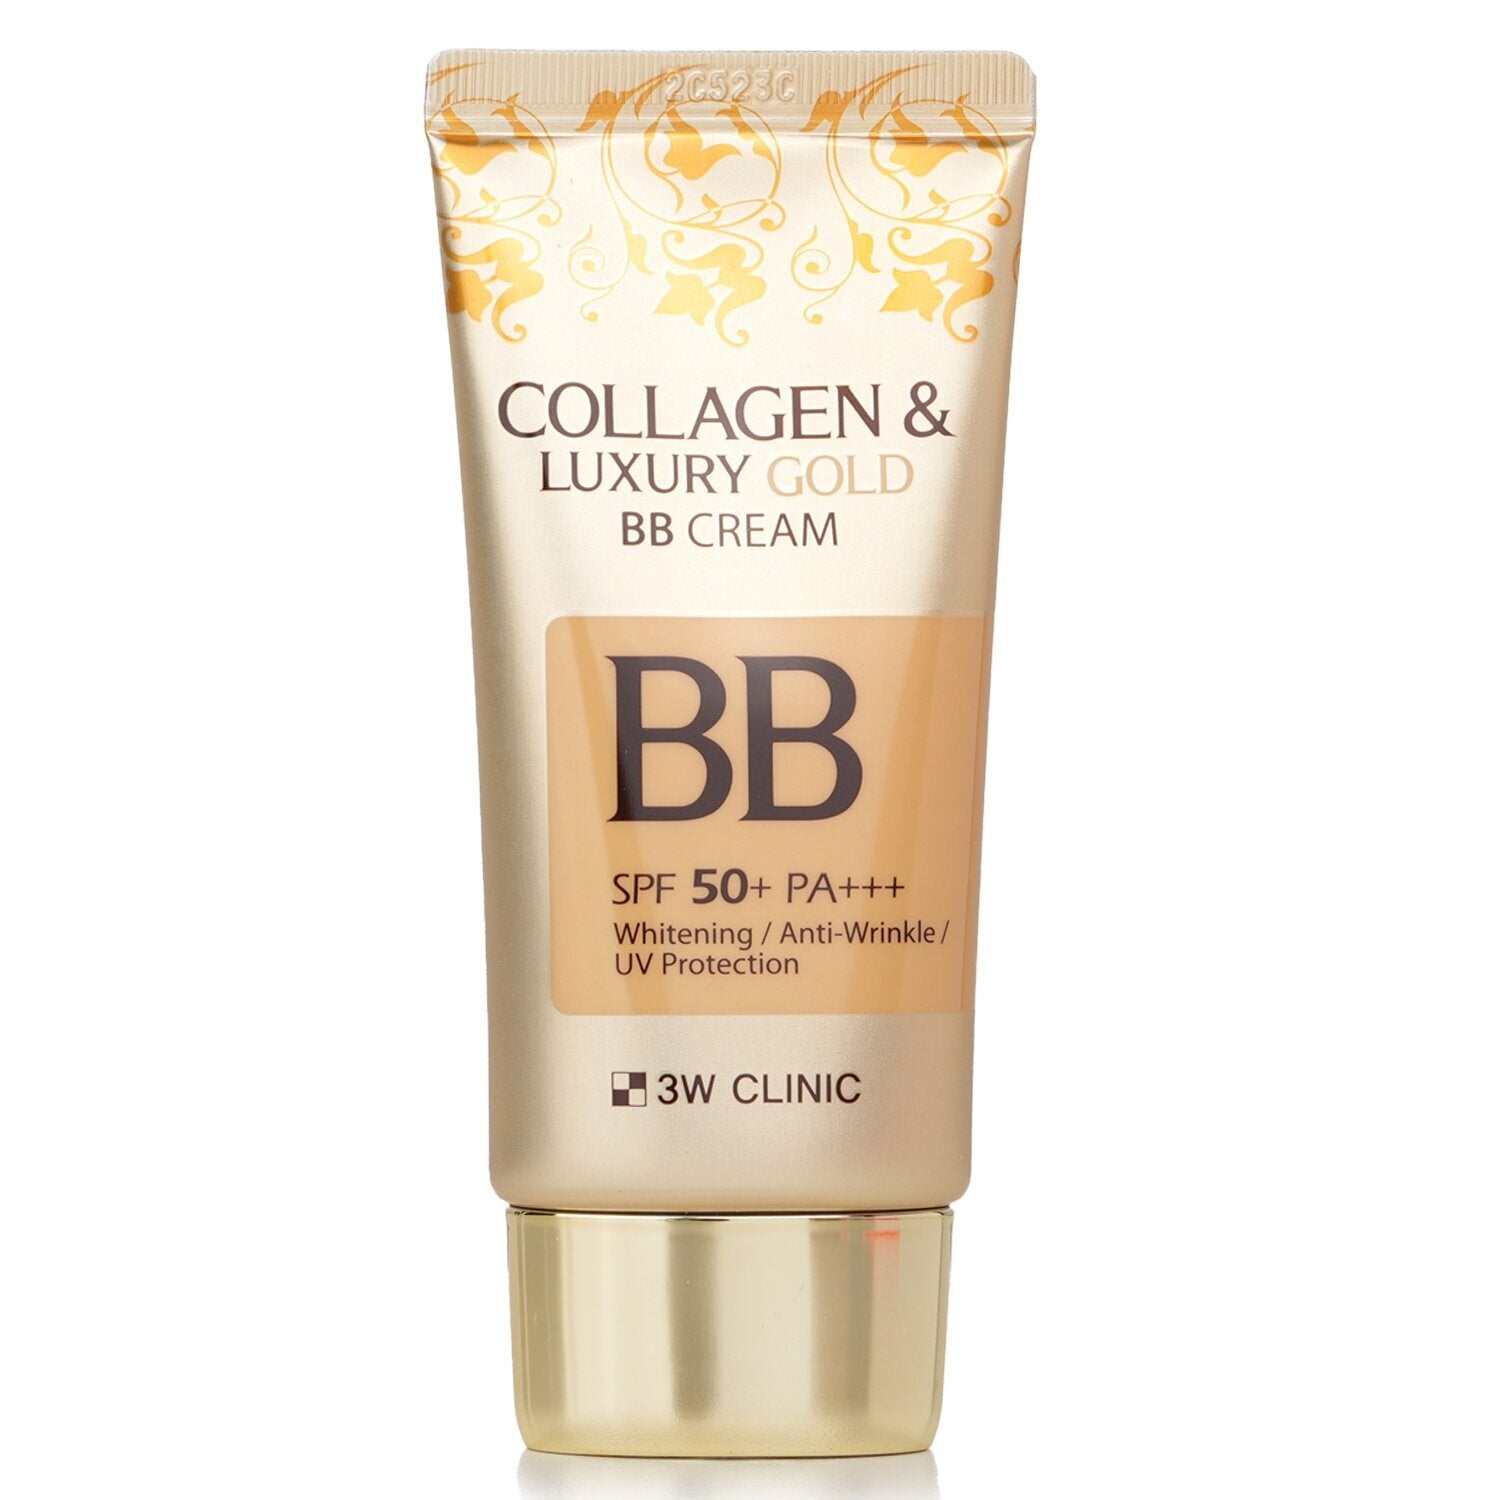 3W CLINIC - Collagen & Luxury Gold BB Cream